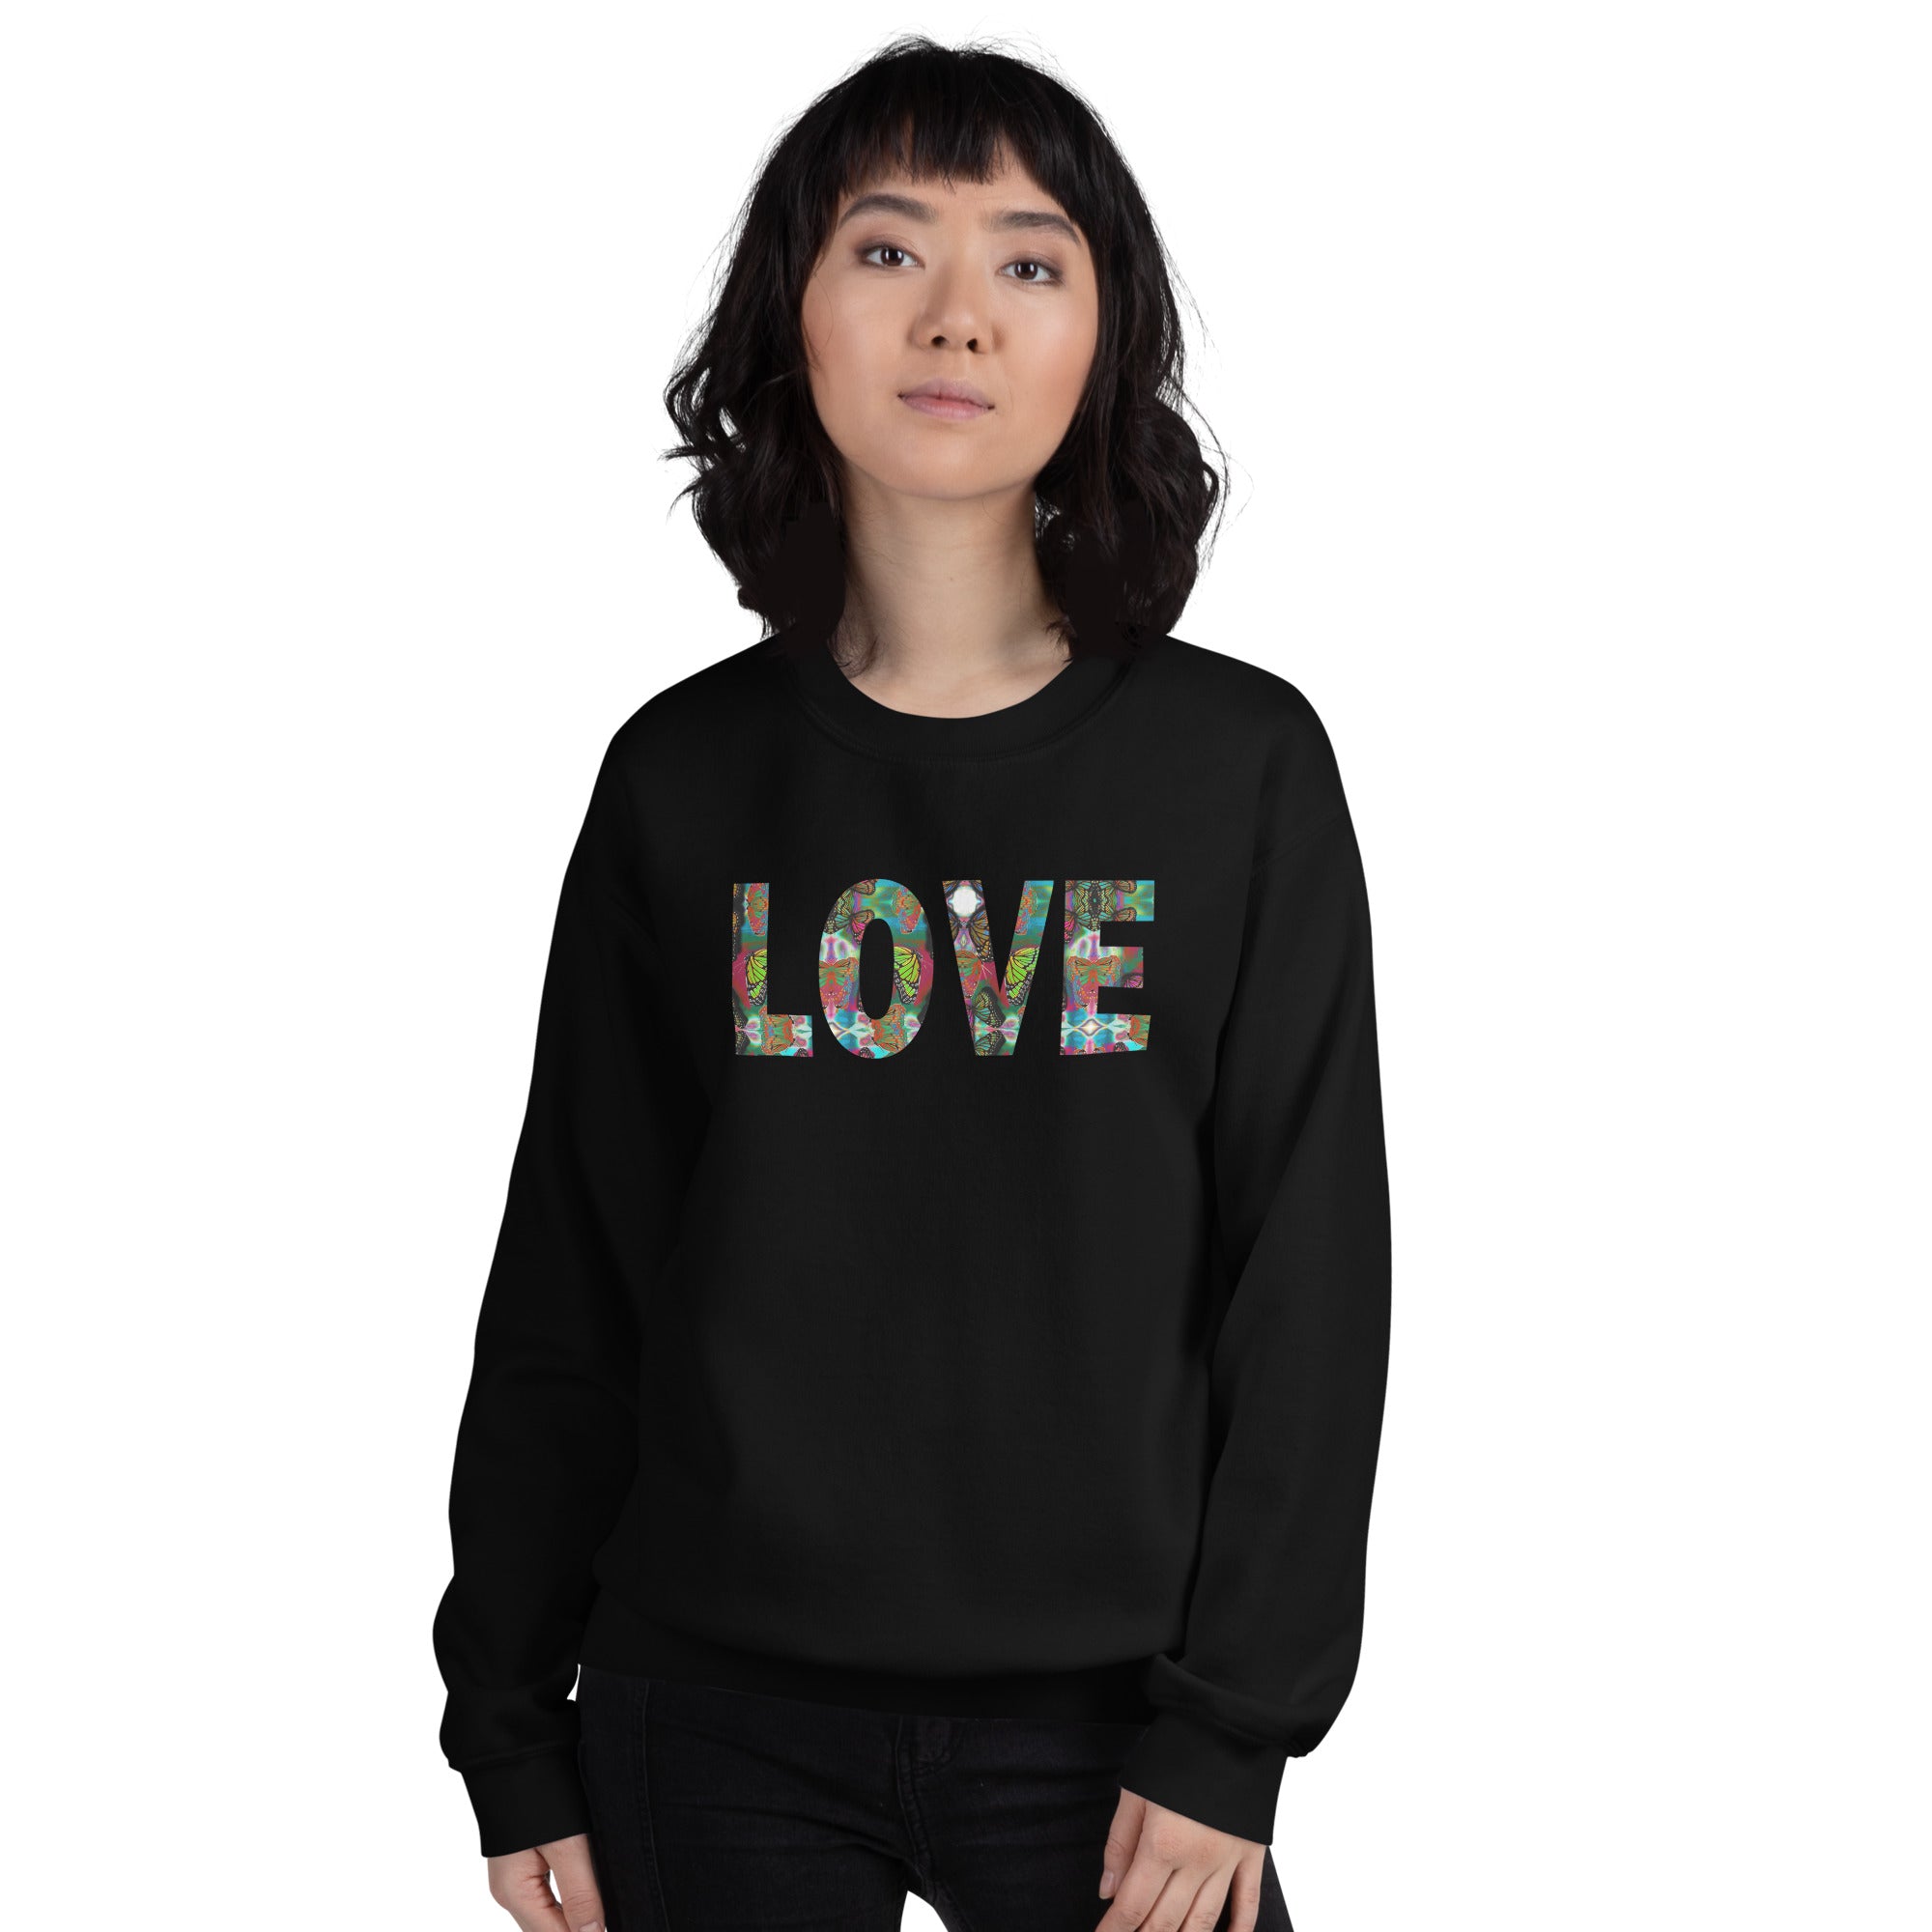 LOVE ~ Butterfly Word Art Crew Neck Graphic Sweatshirt, Women's Unisex Fleece Top